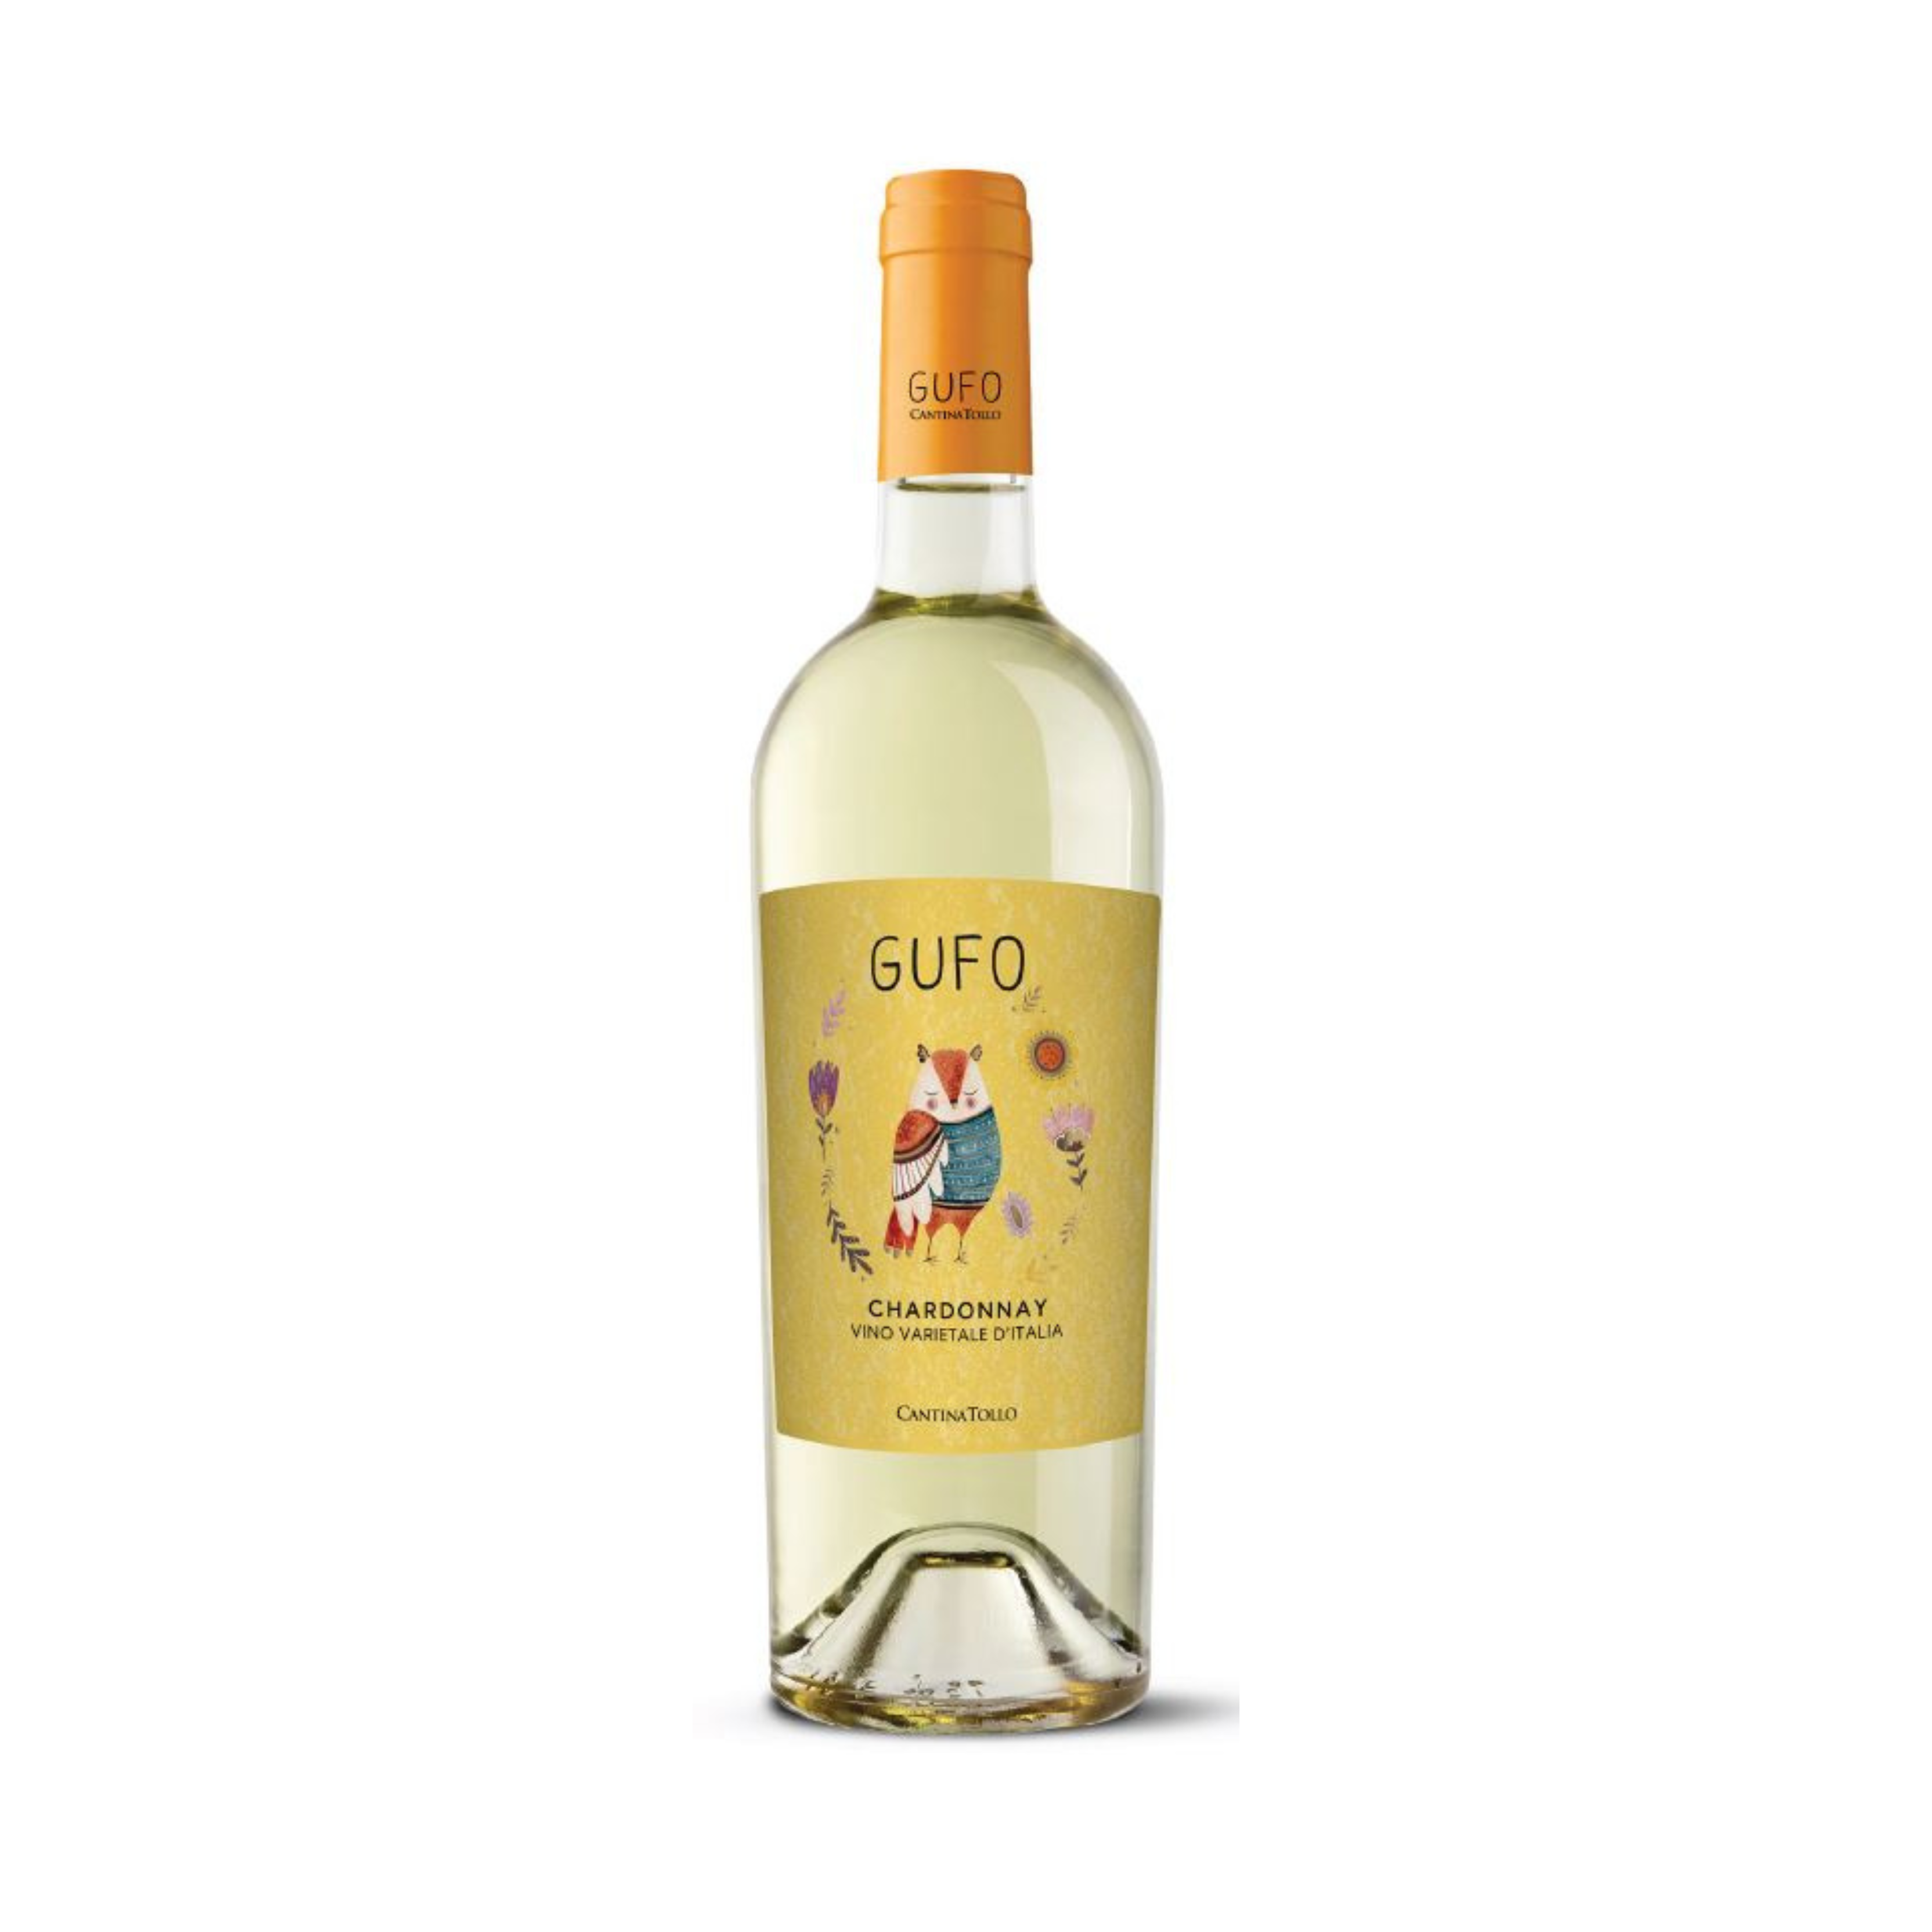 Gufo Chardonnay Vino Varietale, 750mL